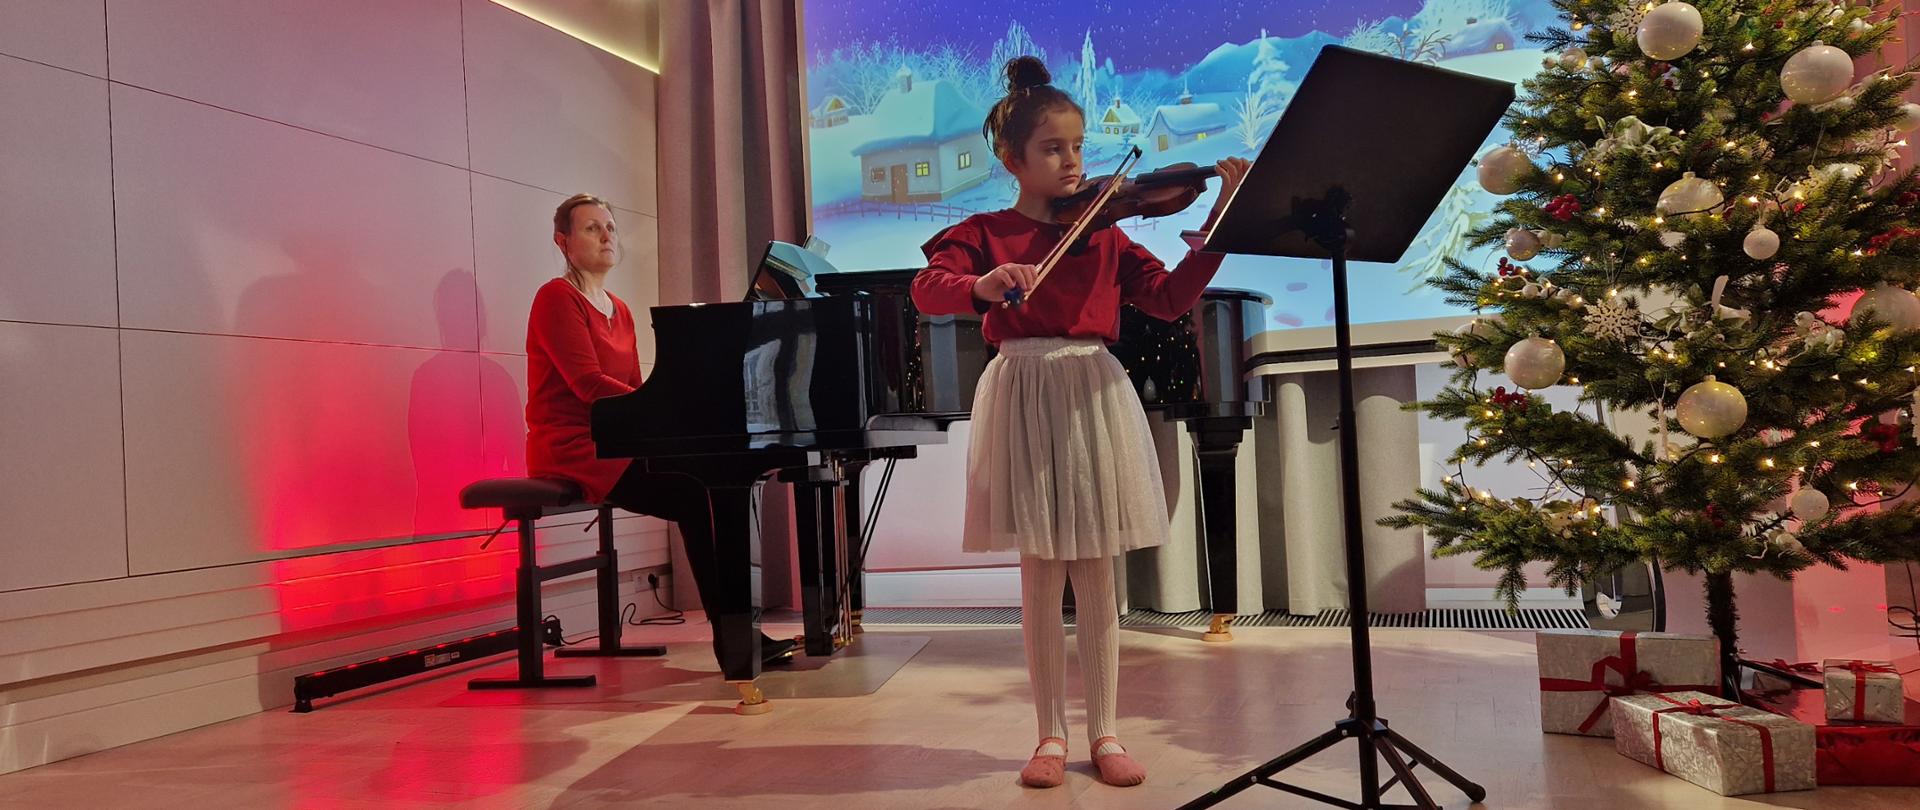 Zdjęcie przedstawia uczennicę stojącą na scenie i grającą na skrzypcach. Dziewczynka ubrana jest w czerwoną bluzkę i jasnoszarą spódniczkę. Przed uczennicą jest ustawiony czarny pulpit do nut. Za uczennicą z lewej strony stoi fortepian, przy którym siedzi nauczyciel ubrany w czerwoną bluzkę. Z prawej strony stoi choinka z prezentami. W tle na ekranie wyświetlona jest grafika, przedstawiająca zimowy krajobraz z ośnieżonymi domami i choinkami. Po bokach na ścianach i częściowo na suficie odbija czerwone światło. 